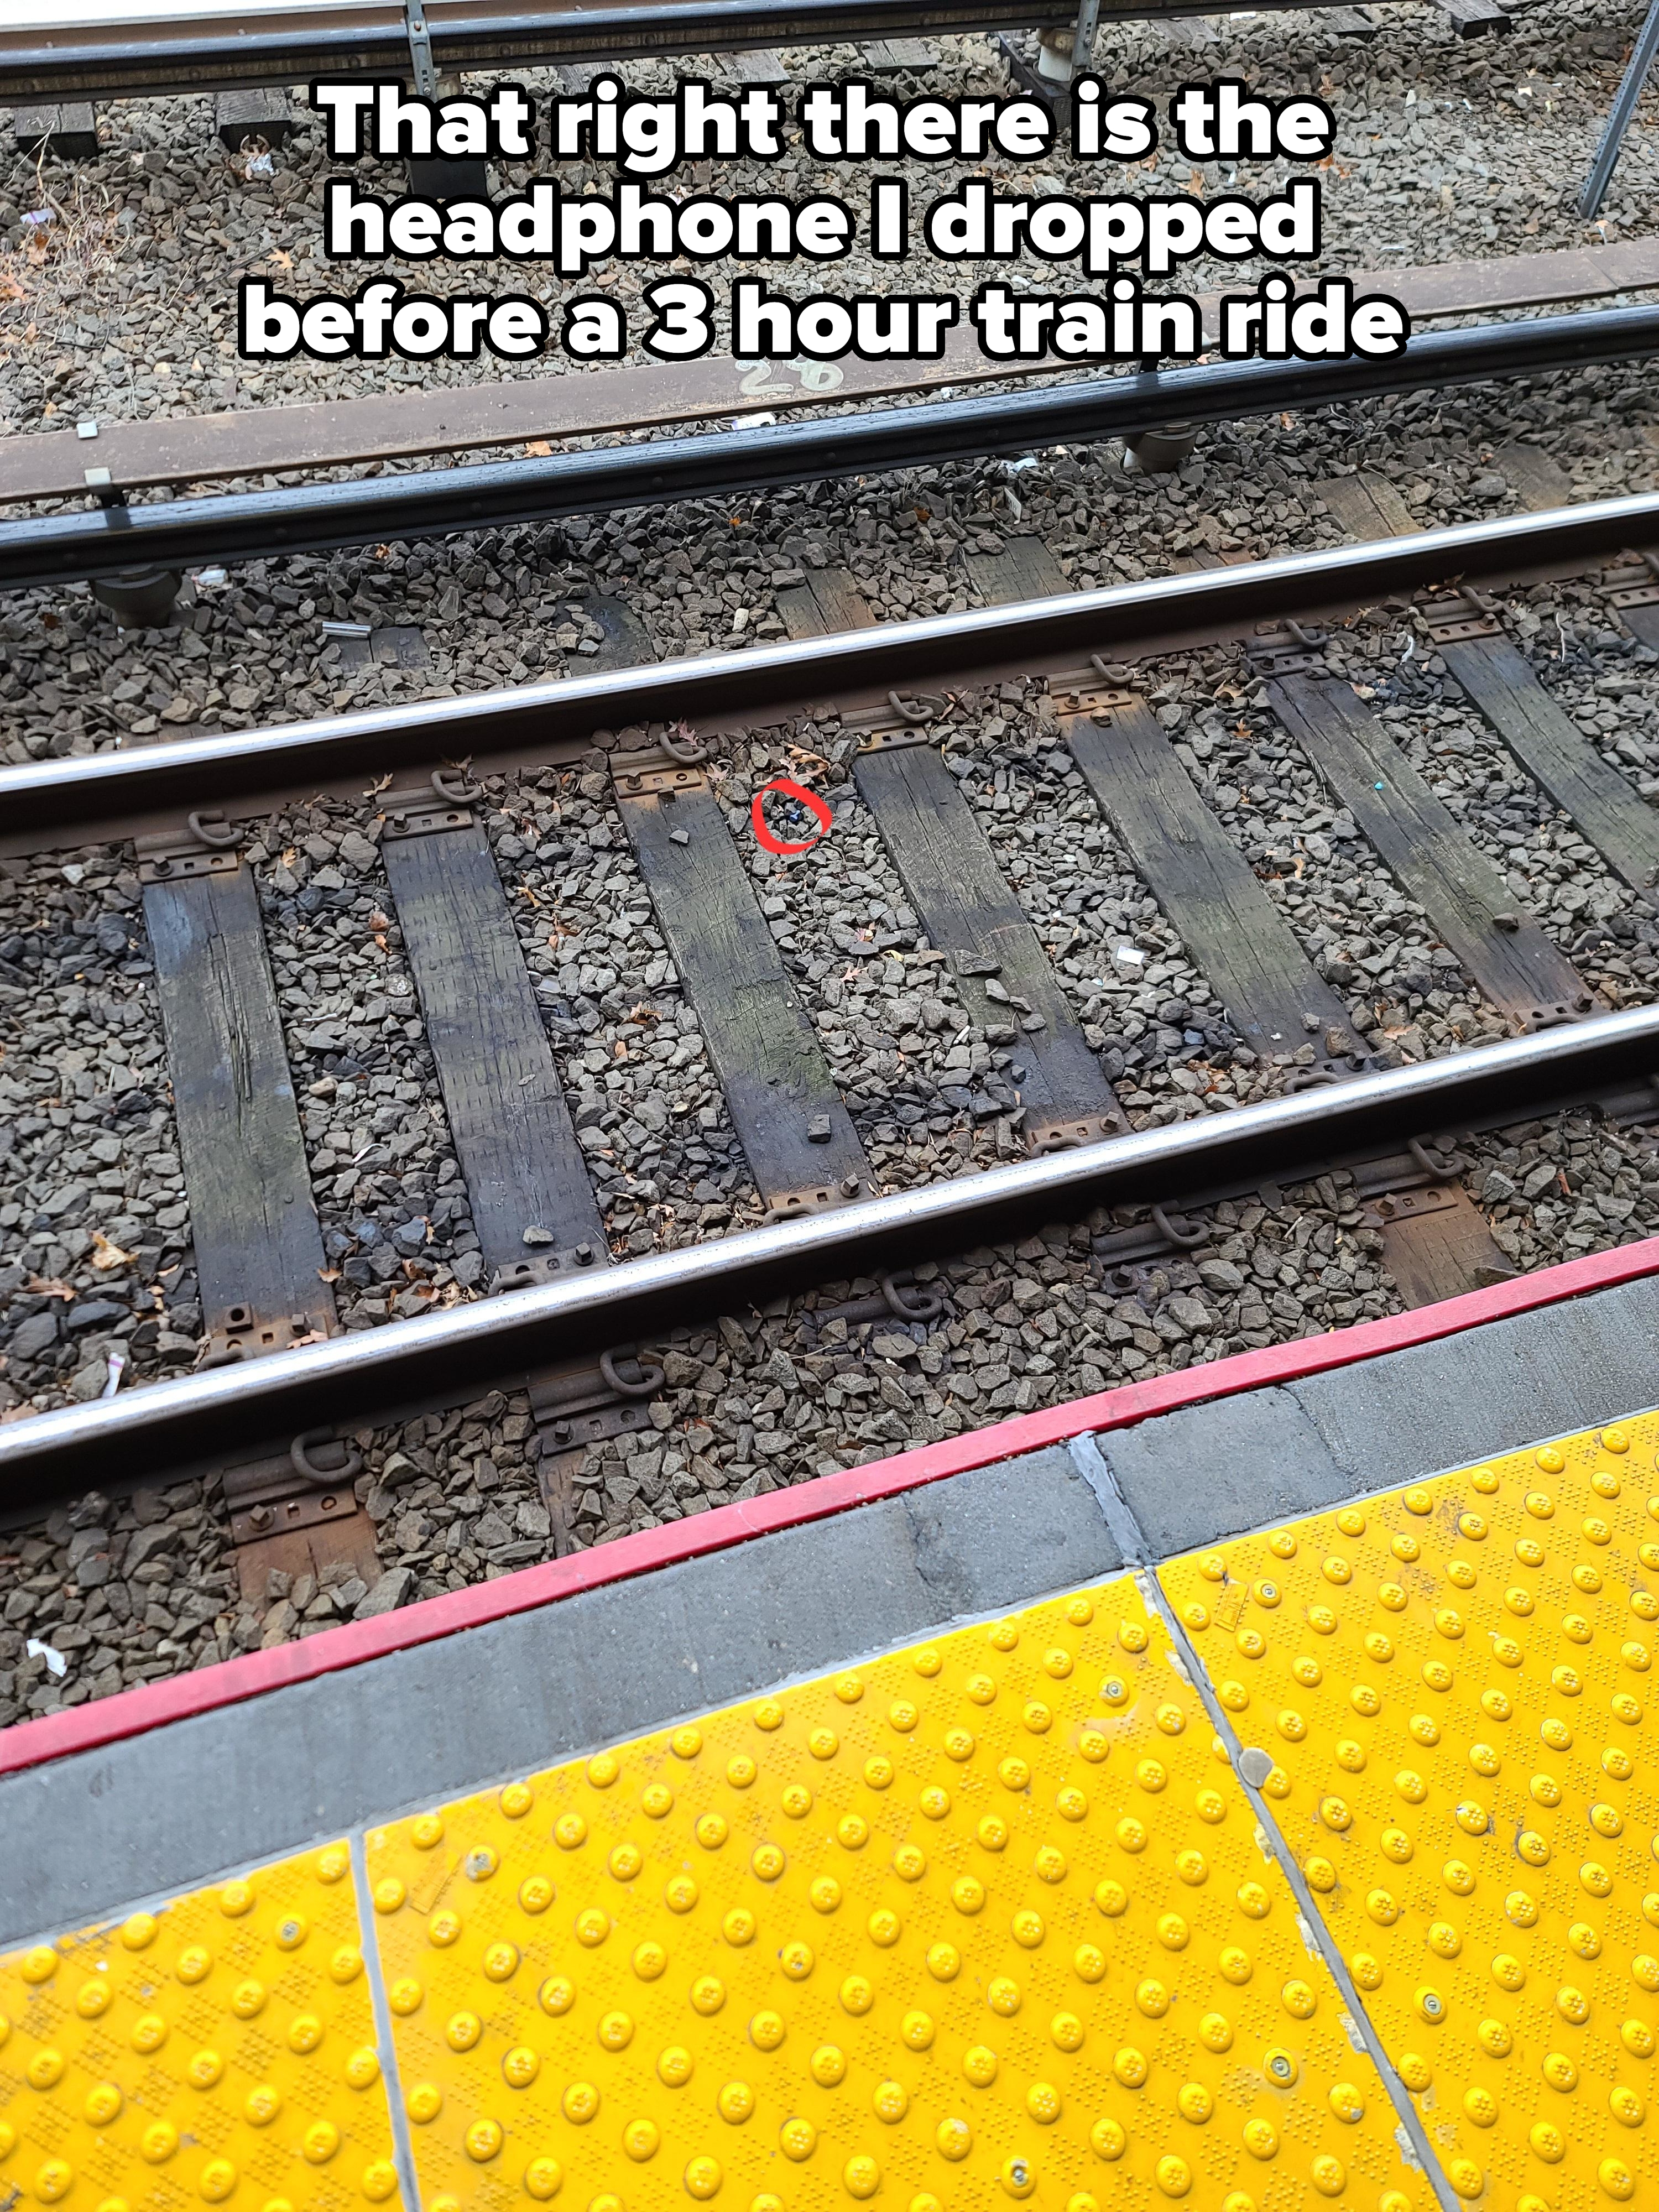 a headphone on a train track